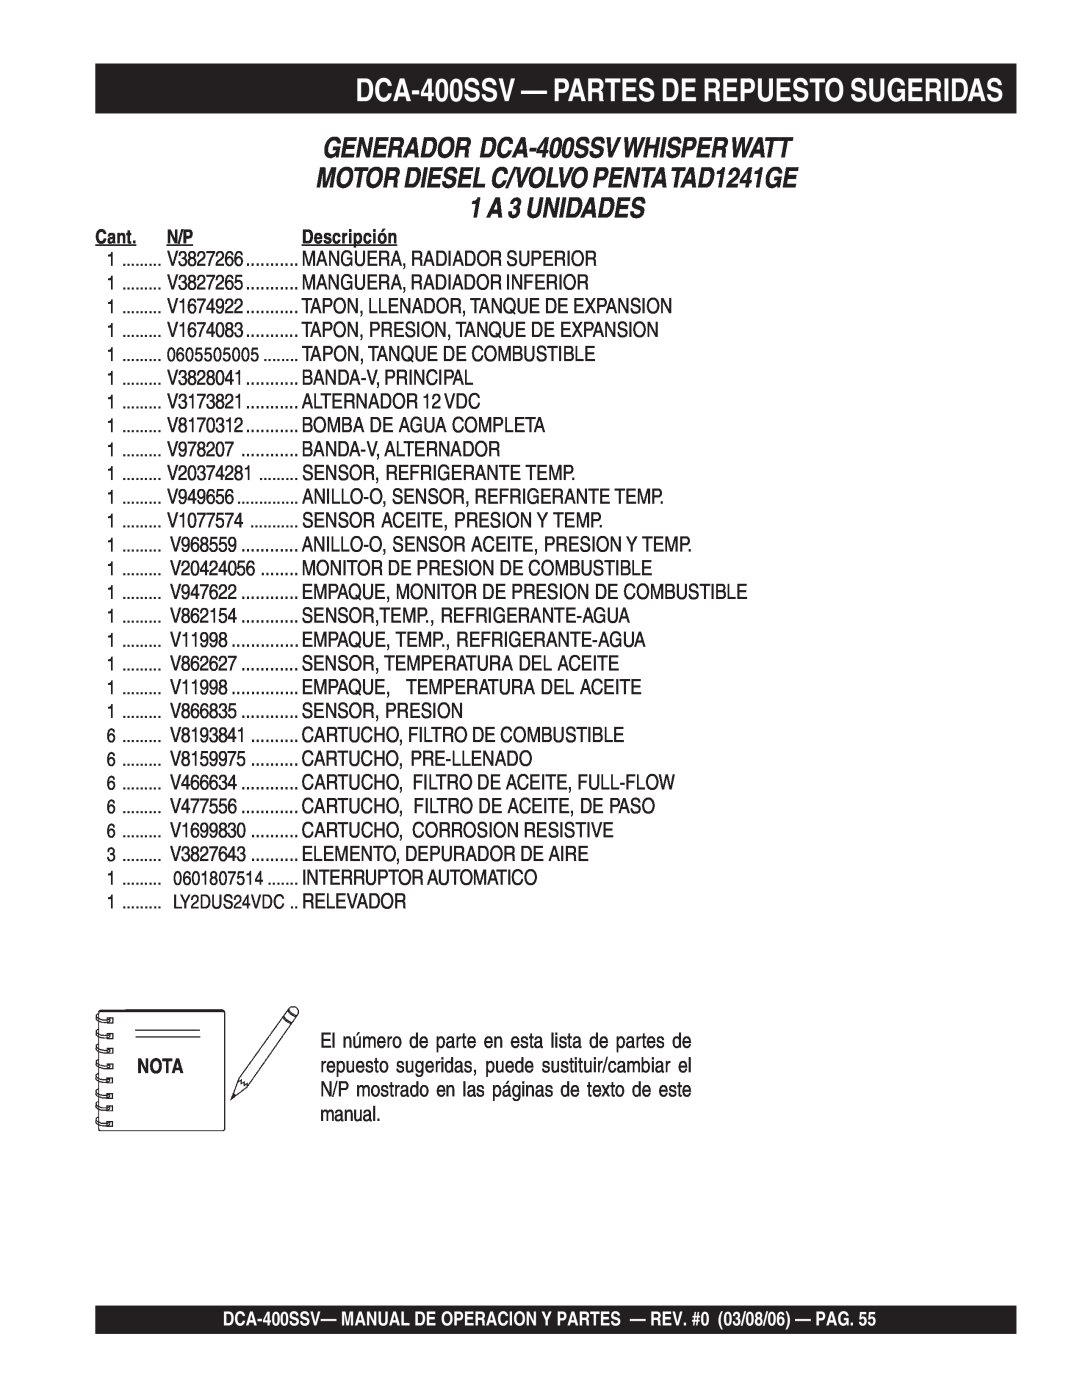 Multiquip operation manual DCA-400SSV— PARTES DE REPUESTO SUGERIDAS, GENERADOR DCA-400SSVWHISPERWATT, 1 A 3 UNIDADES 